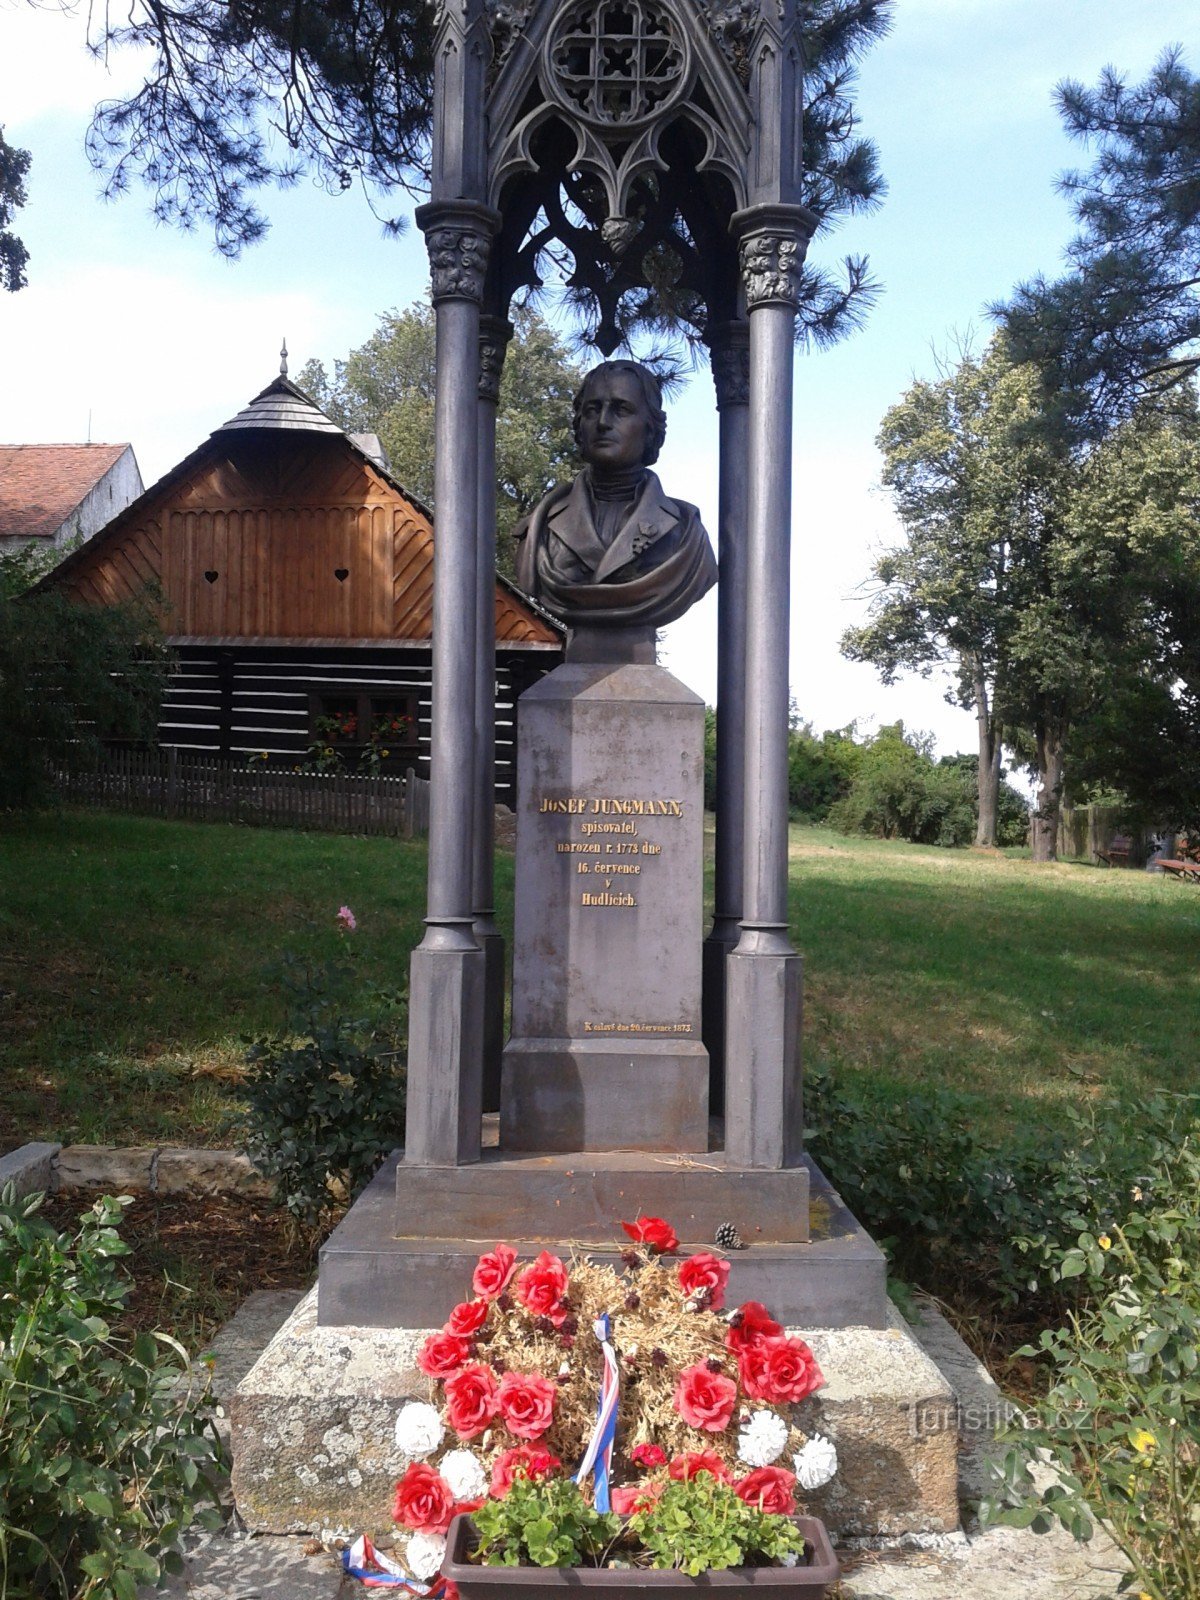 Пам'ятник Йозефу Юнгманну Гудліце